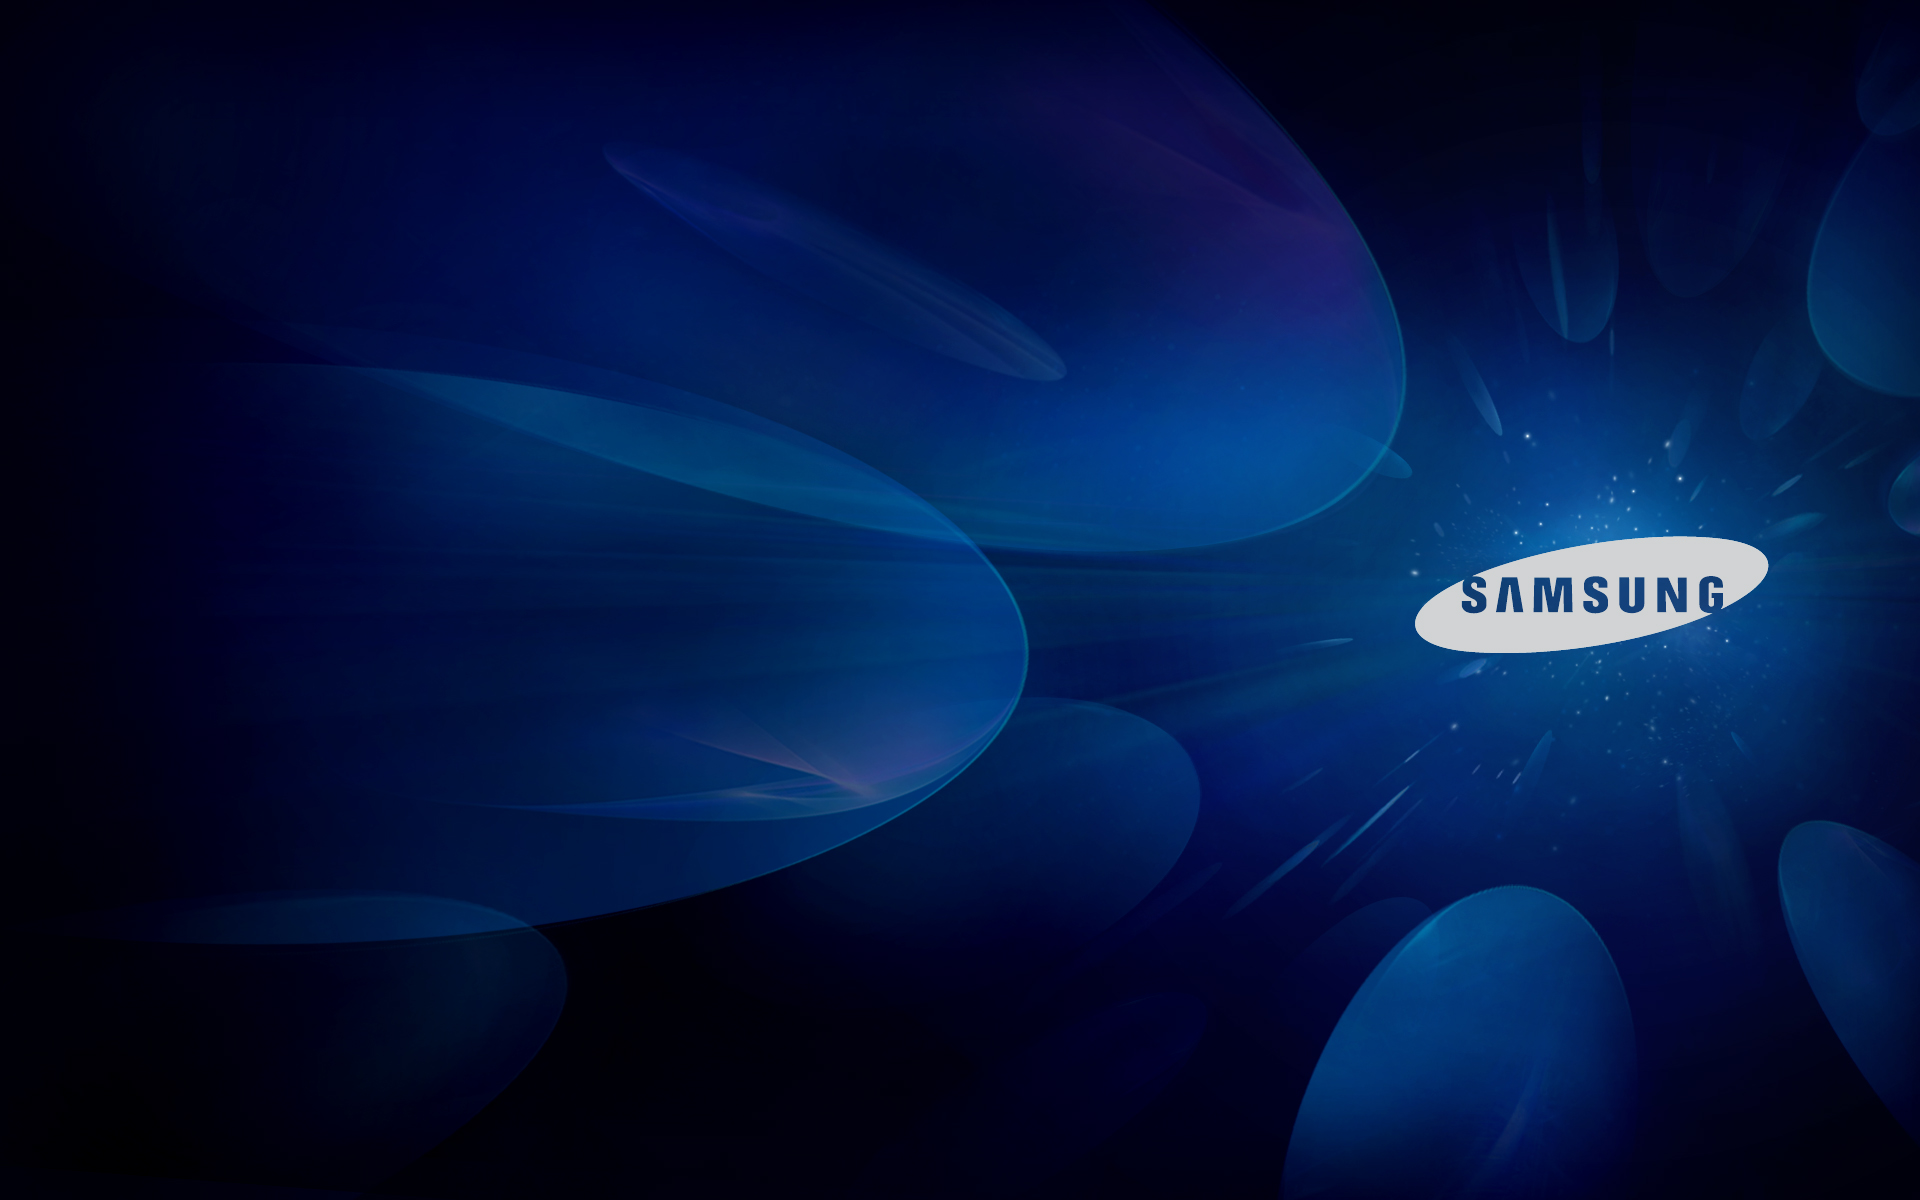 Hãy tải và cài đặt ngay hình nền Samsung trên điện thoại của bạn. Với Samsung Logo Wallpaper, bạn sẽ có được một bức tranh đẹp và ấn tượng để thể hiện tình yêu và lòng trung thành của mình đến với thương hiệu Samsung nổi tiếng.